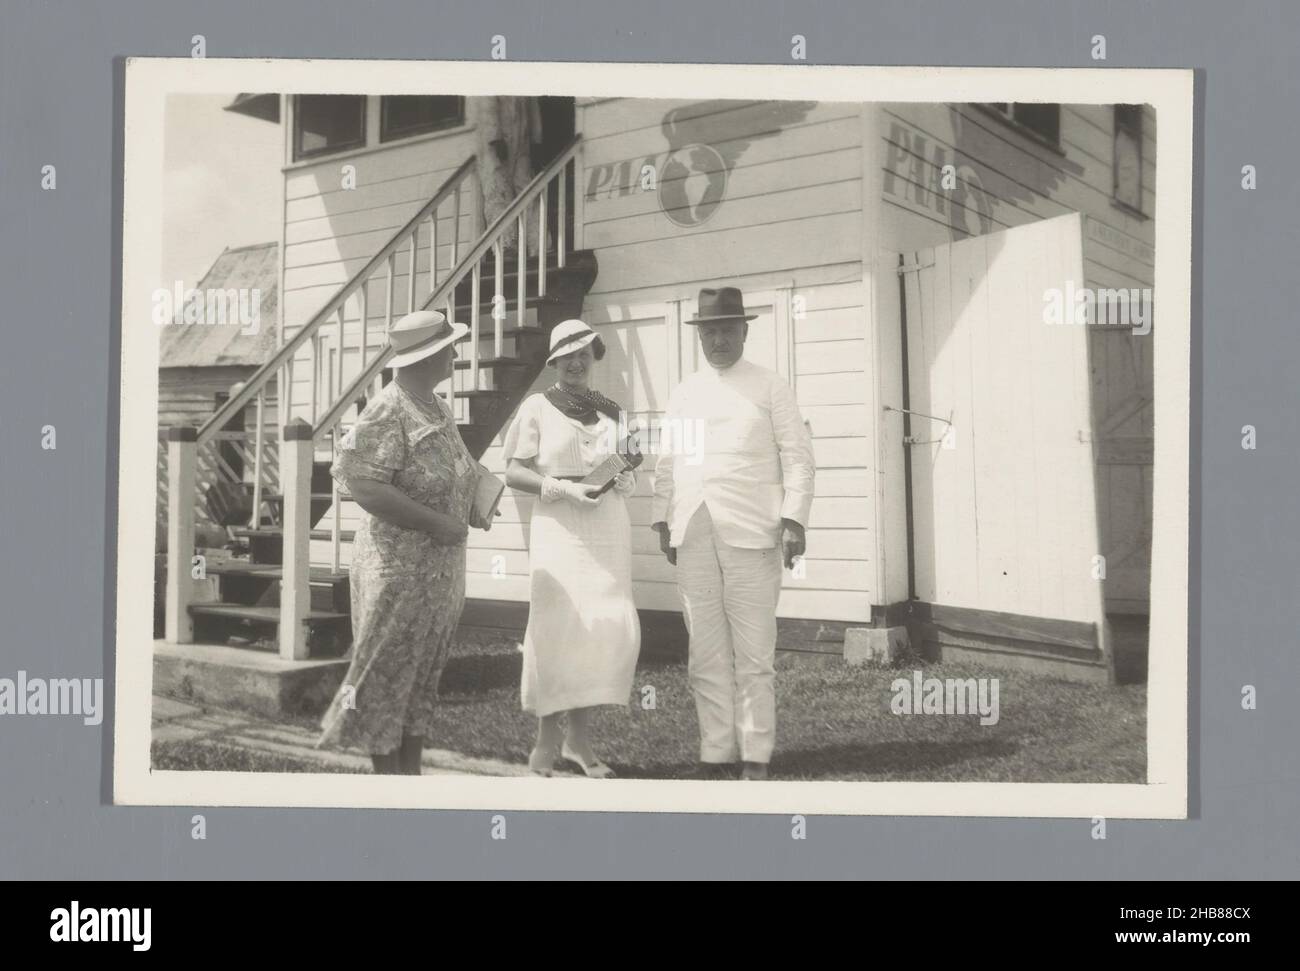 Zwei unbekannte Frauen und ein unbekannter Mann vor einem Pan American World Airways Gebäude, anonym, Vereinigte Staaten von Amerika, in oder nach 1927 - c. 1950, fotografischer Träger, Silbergelatine-Druck, Höhe 60 mm × Breite 85 mm Stockfoto